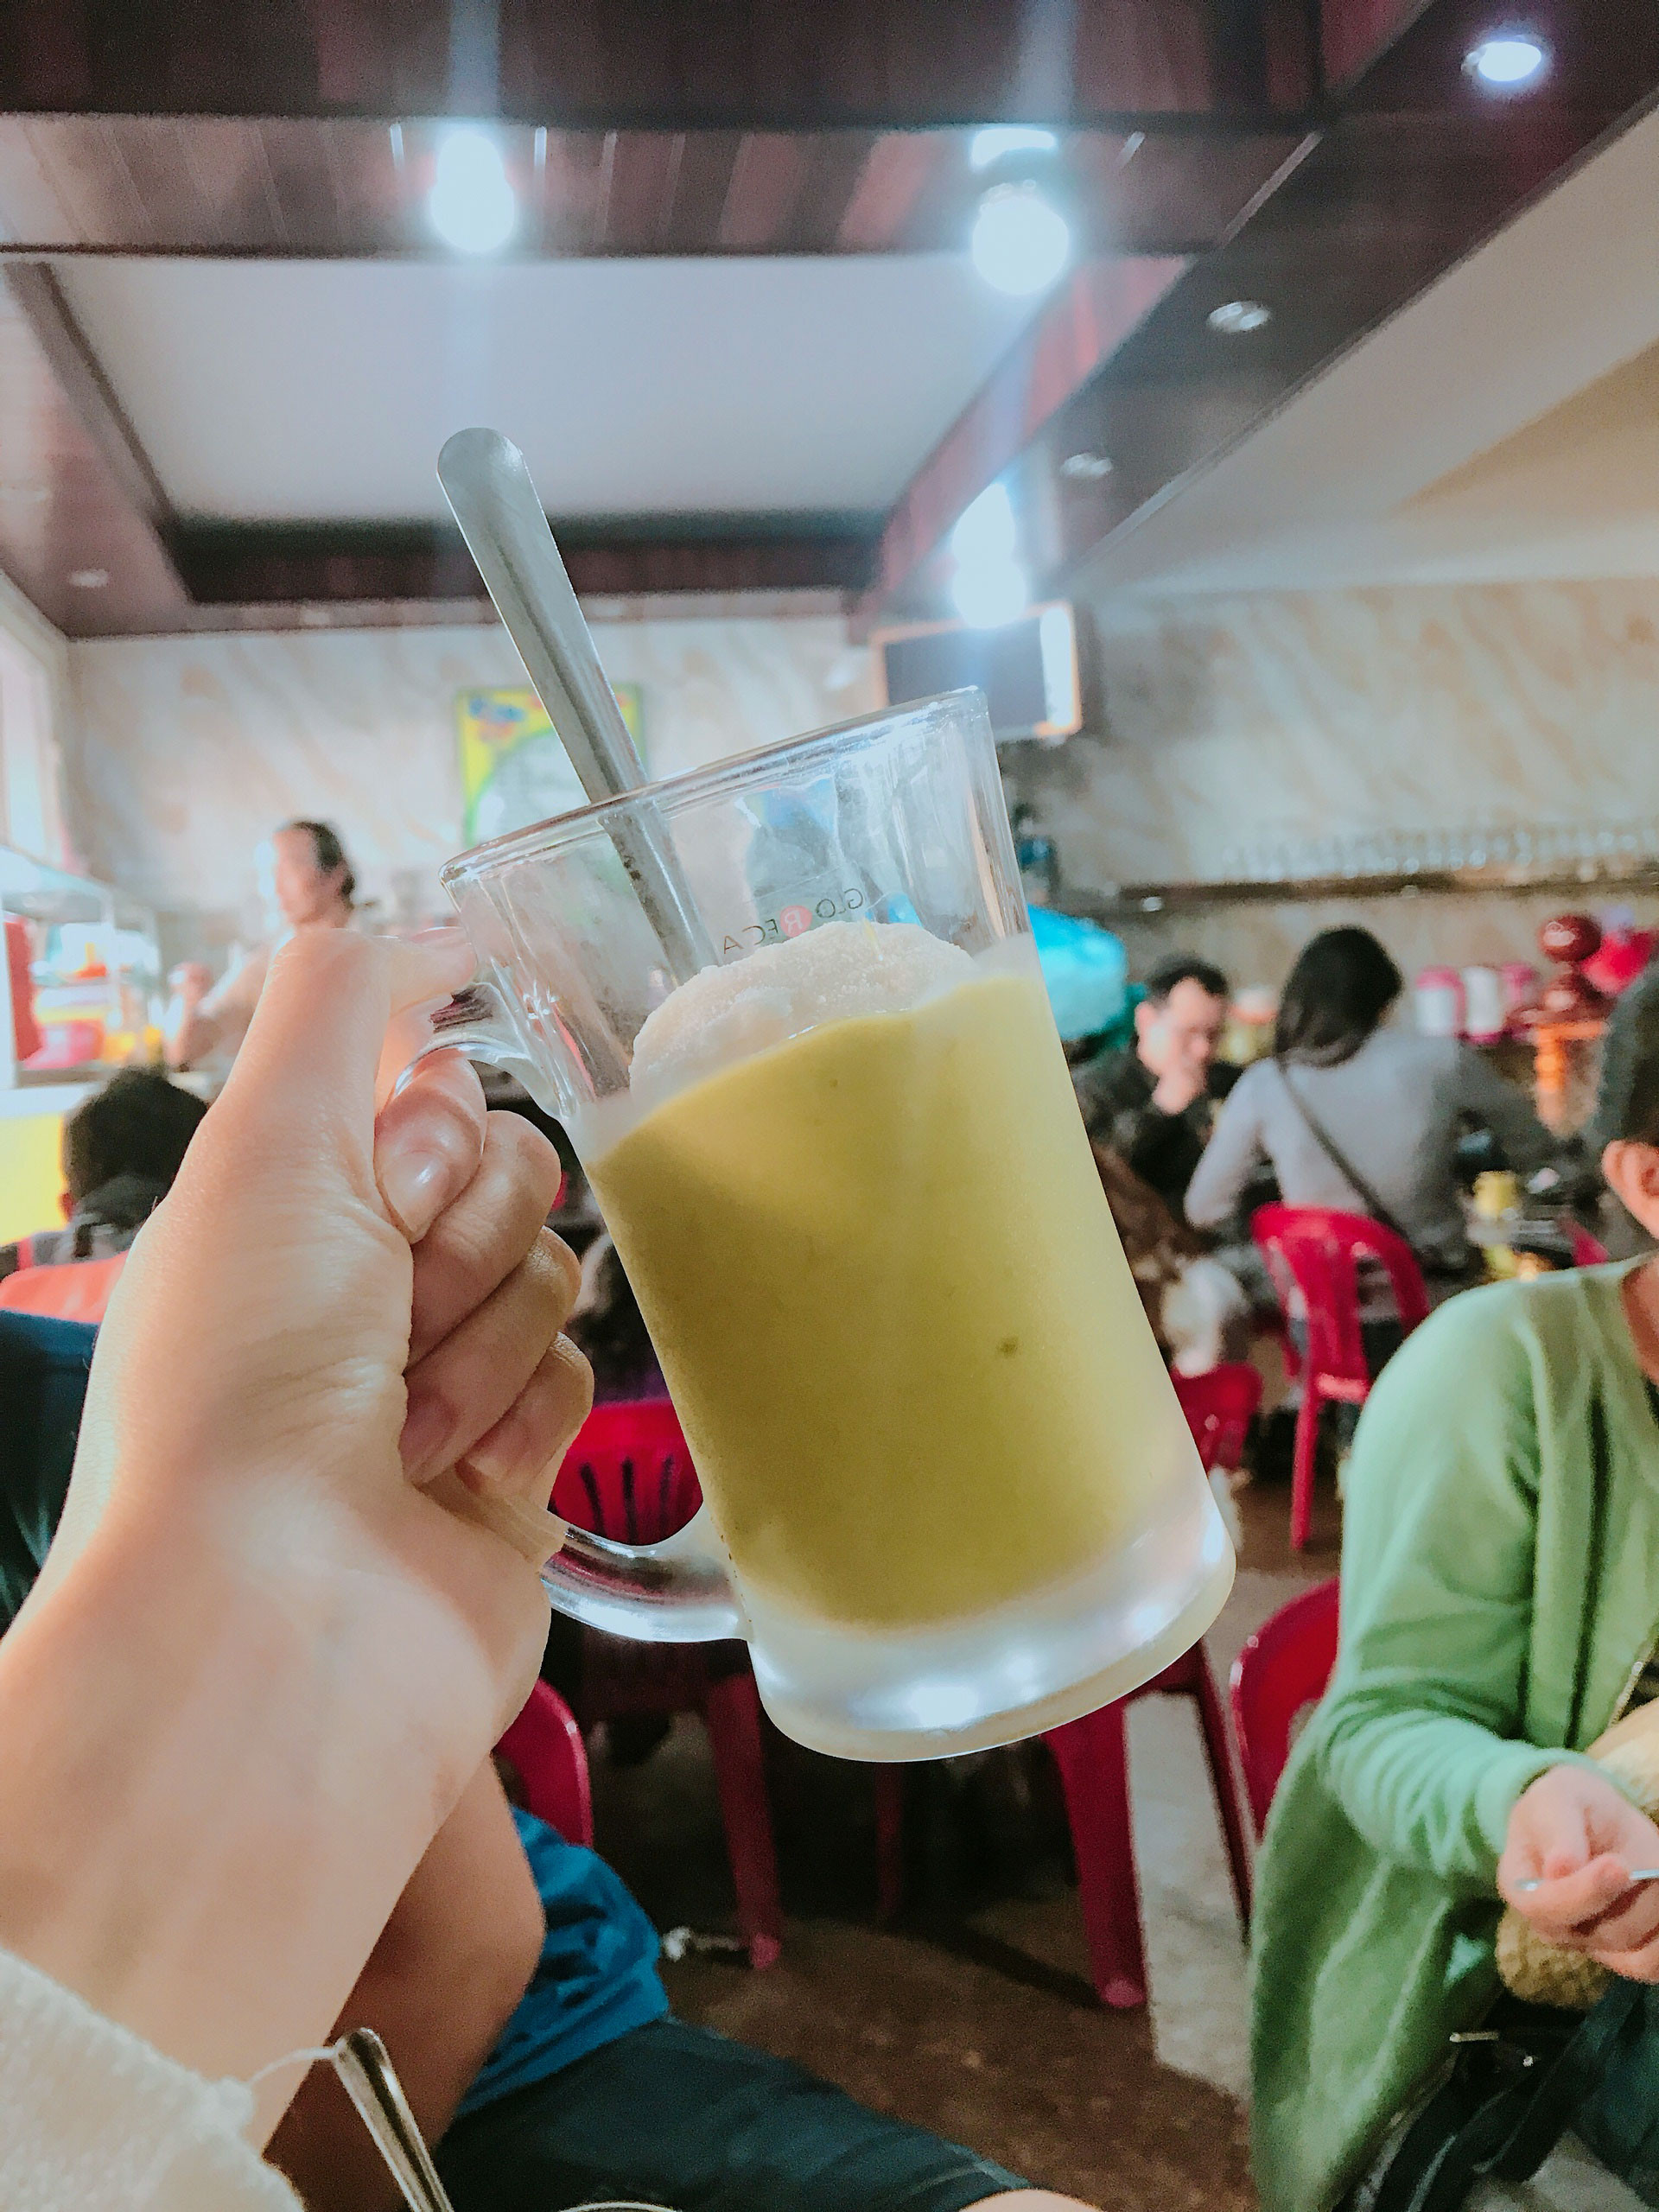 Du lịch Đà Lạt Tết 2019, không thể bỏ qua những địa điểm ăn uống này - ảnh 3